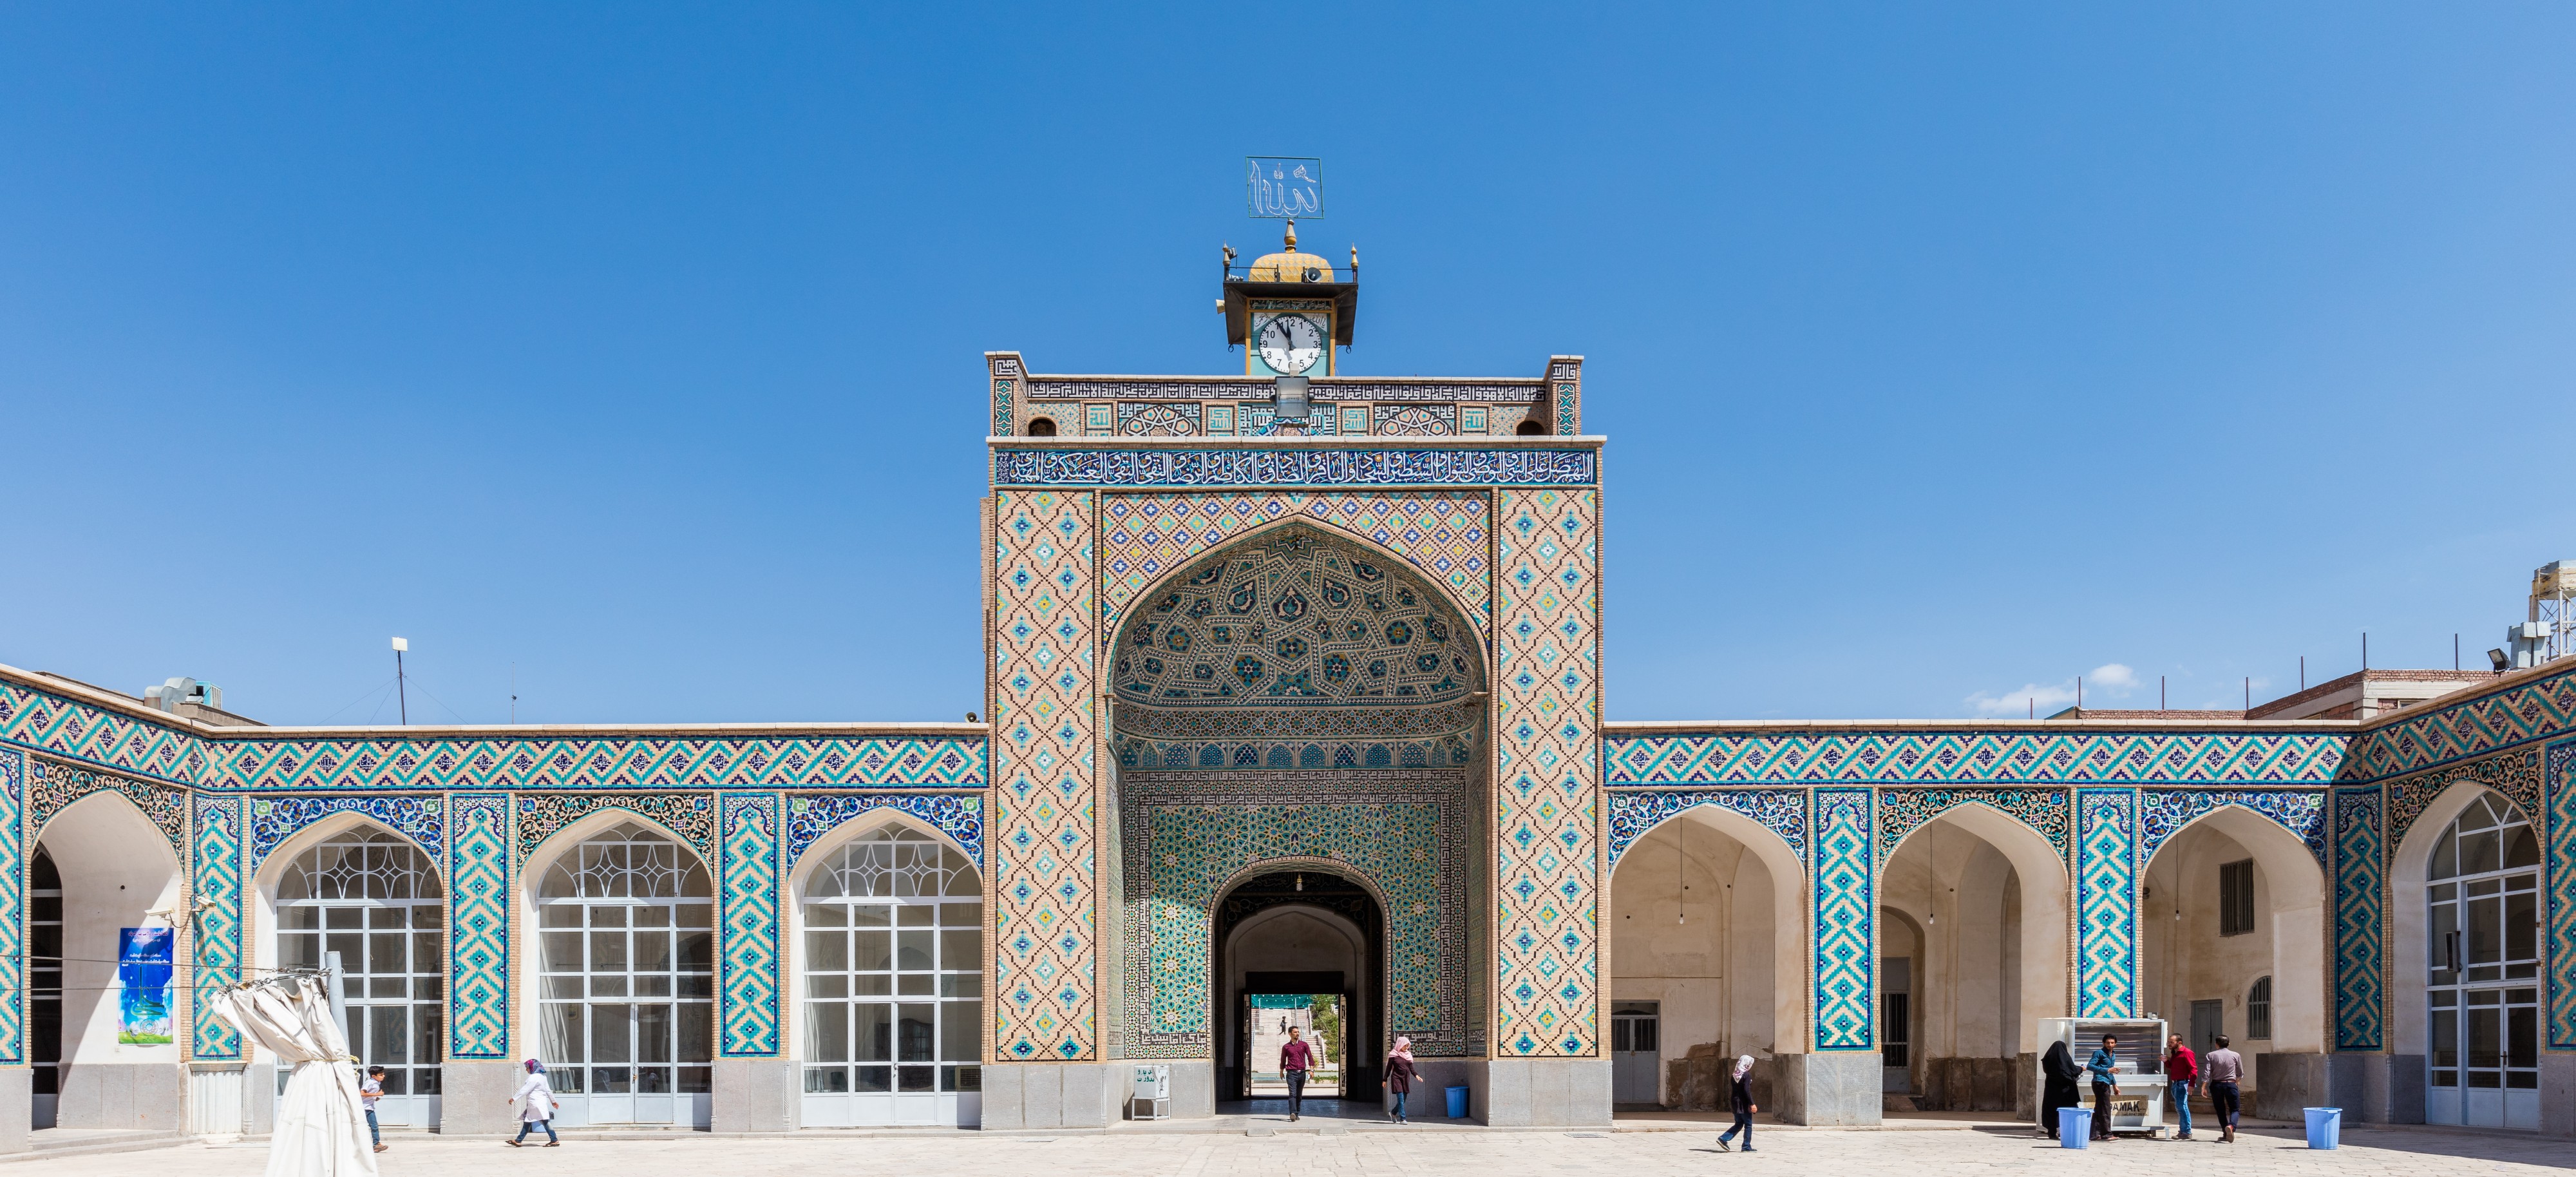 Mezquita de Malek, Kerman, Irán, 2016-09-22, DD 27